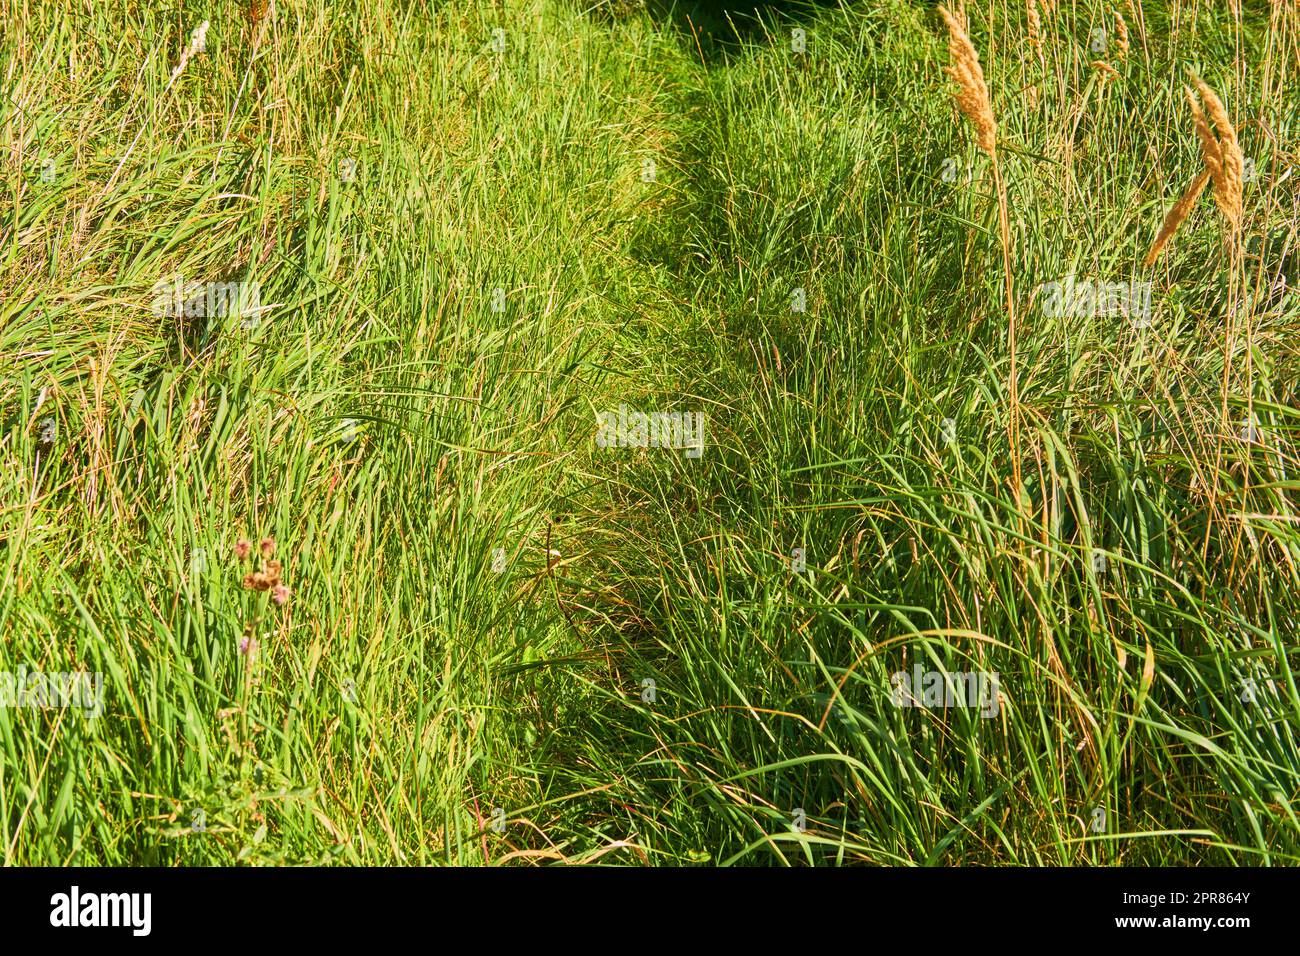 Sendero para caminar cubierto en un campo de hierba afuera bajo el sol. Entorno rural vacío de escena de naturaleza tranquila de cañas silvestres en un exuberante prado verde para un fondo de espacio de copia. Foto de stock